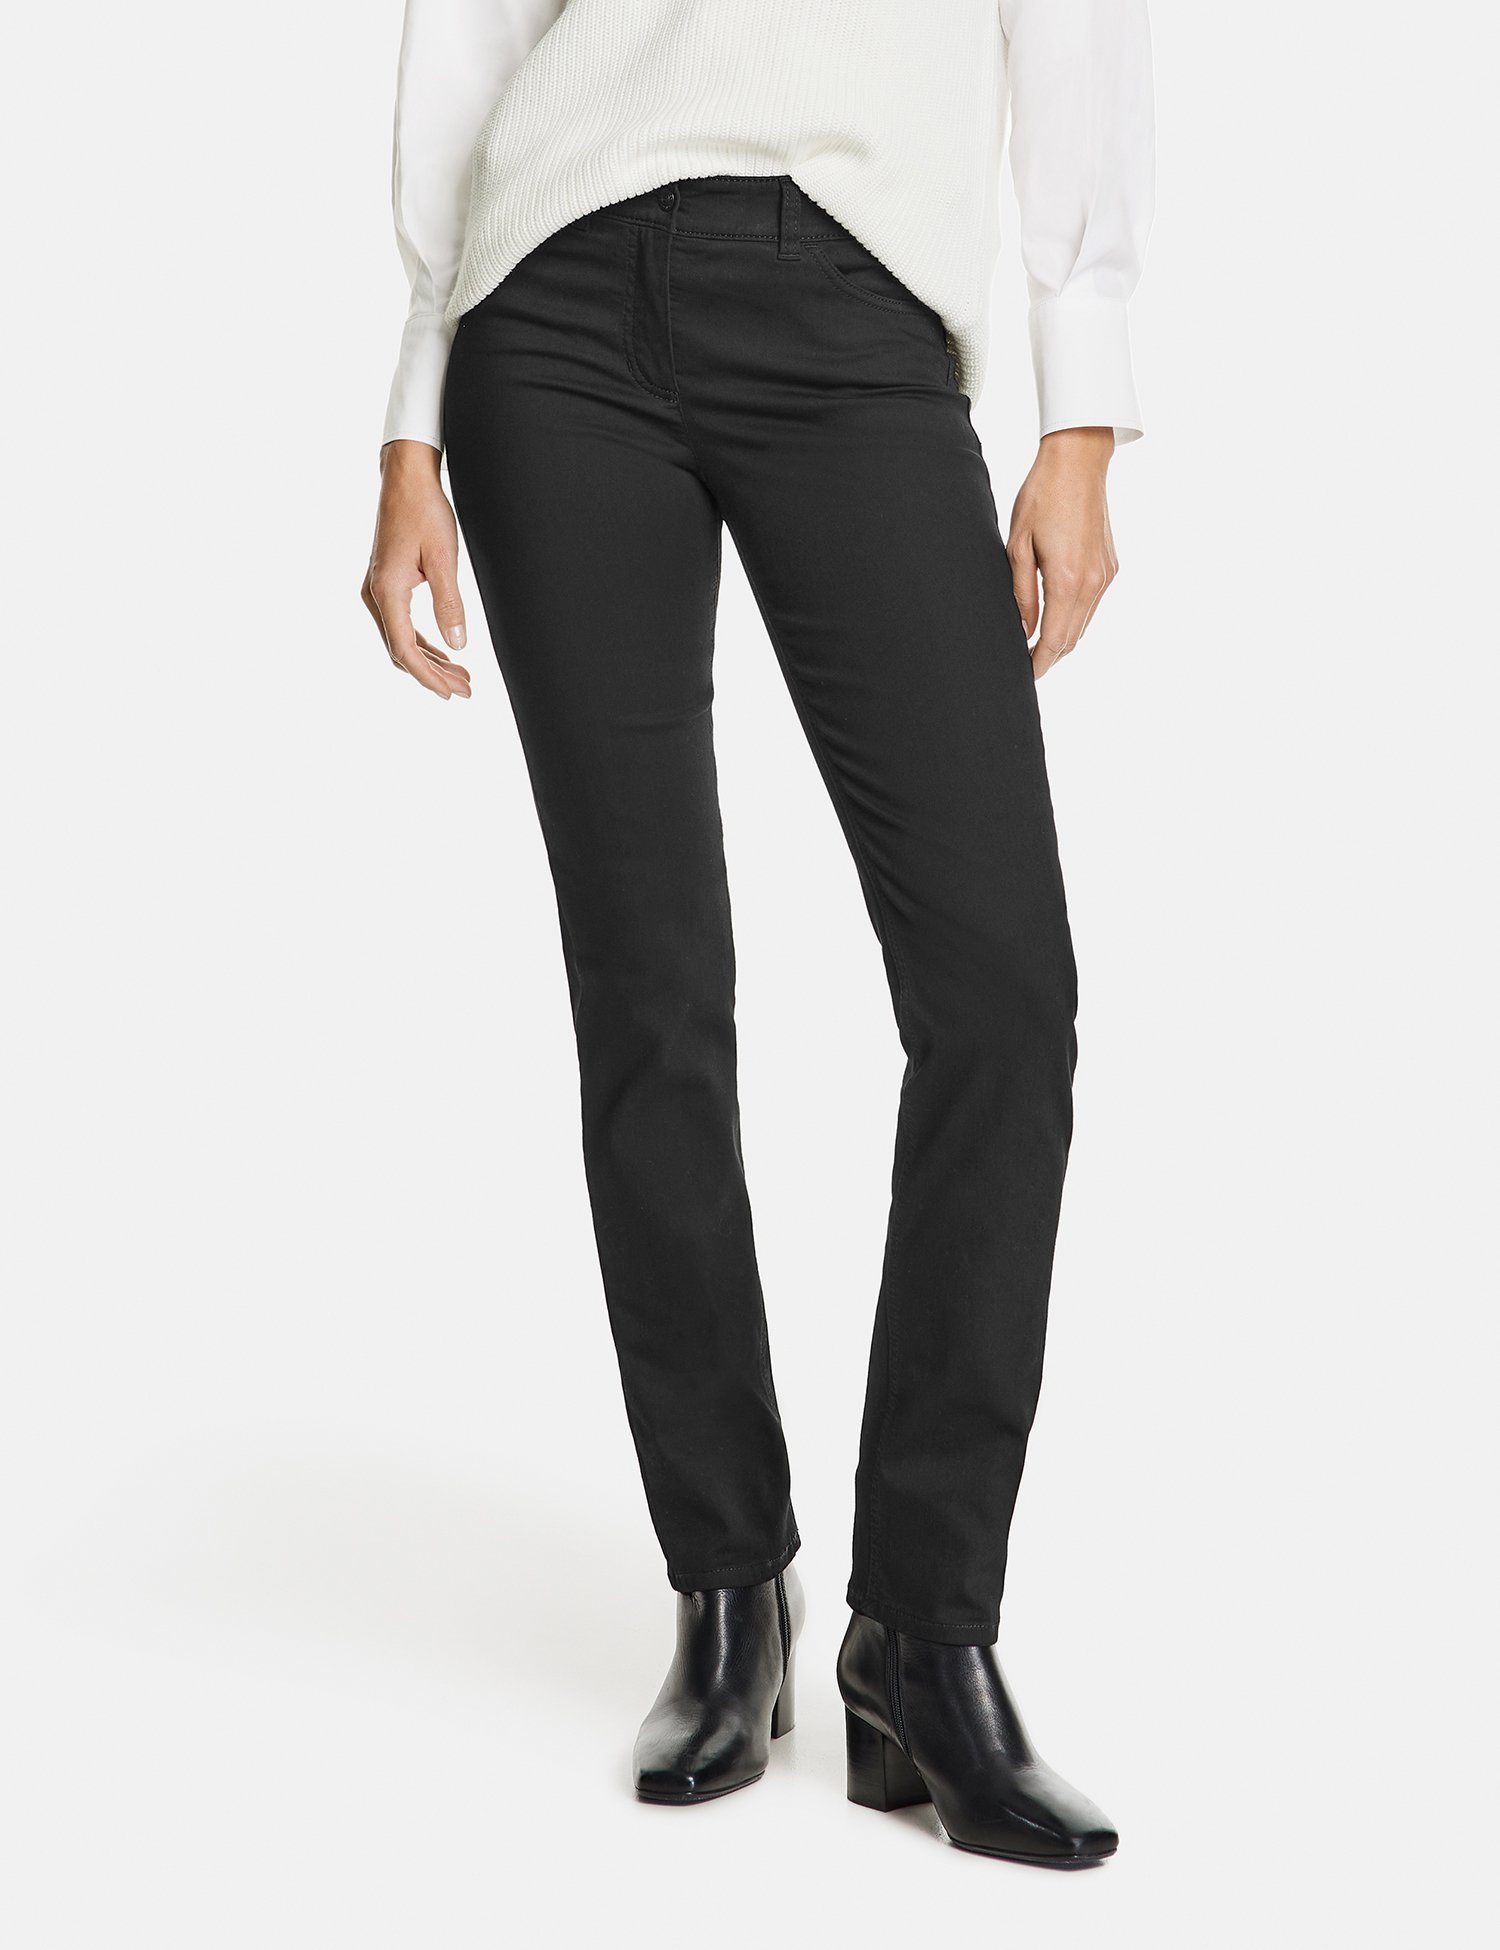 GERRY WEBER Stretch-Jeans 5-Pocket Jeans Best4me Langgröße black black denim (12800)